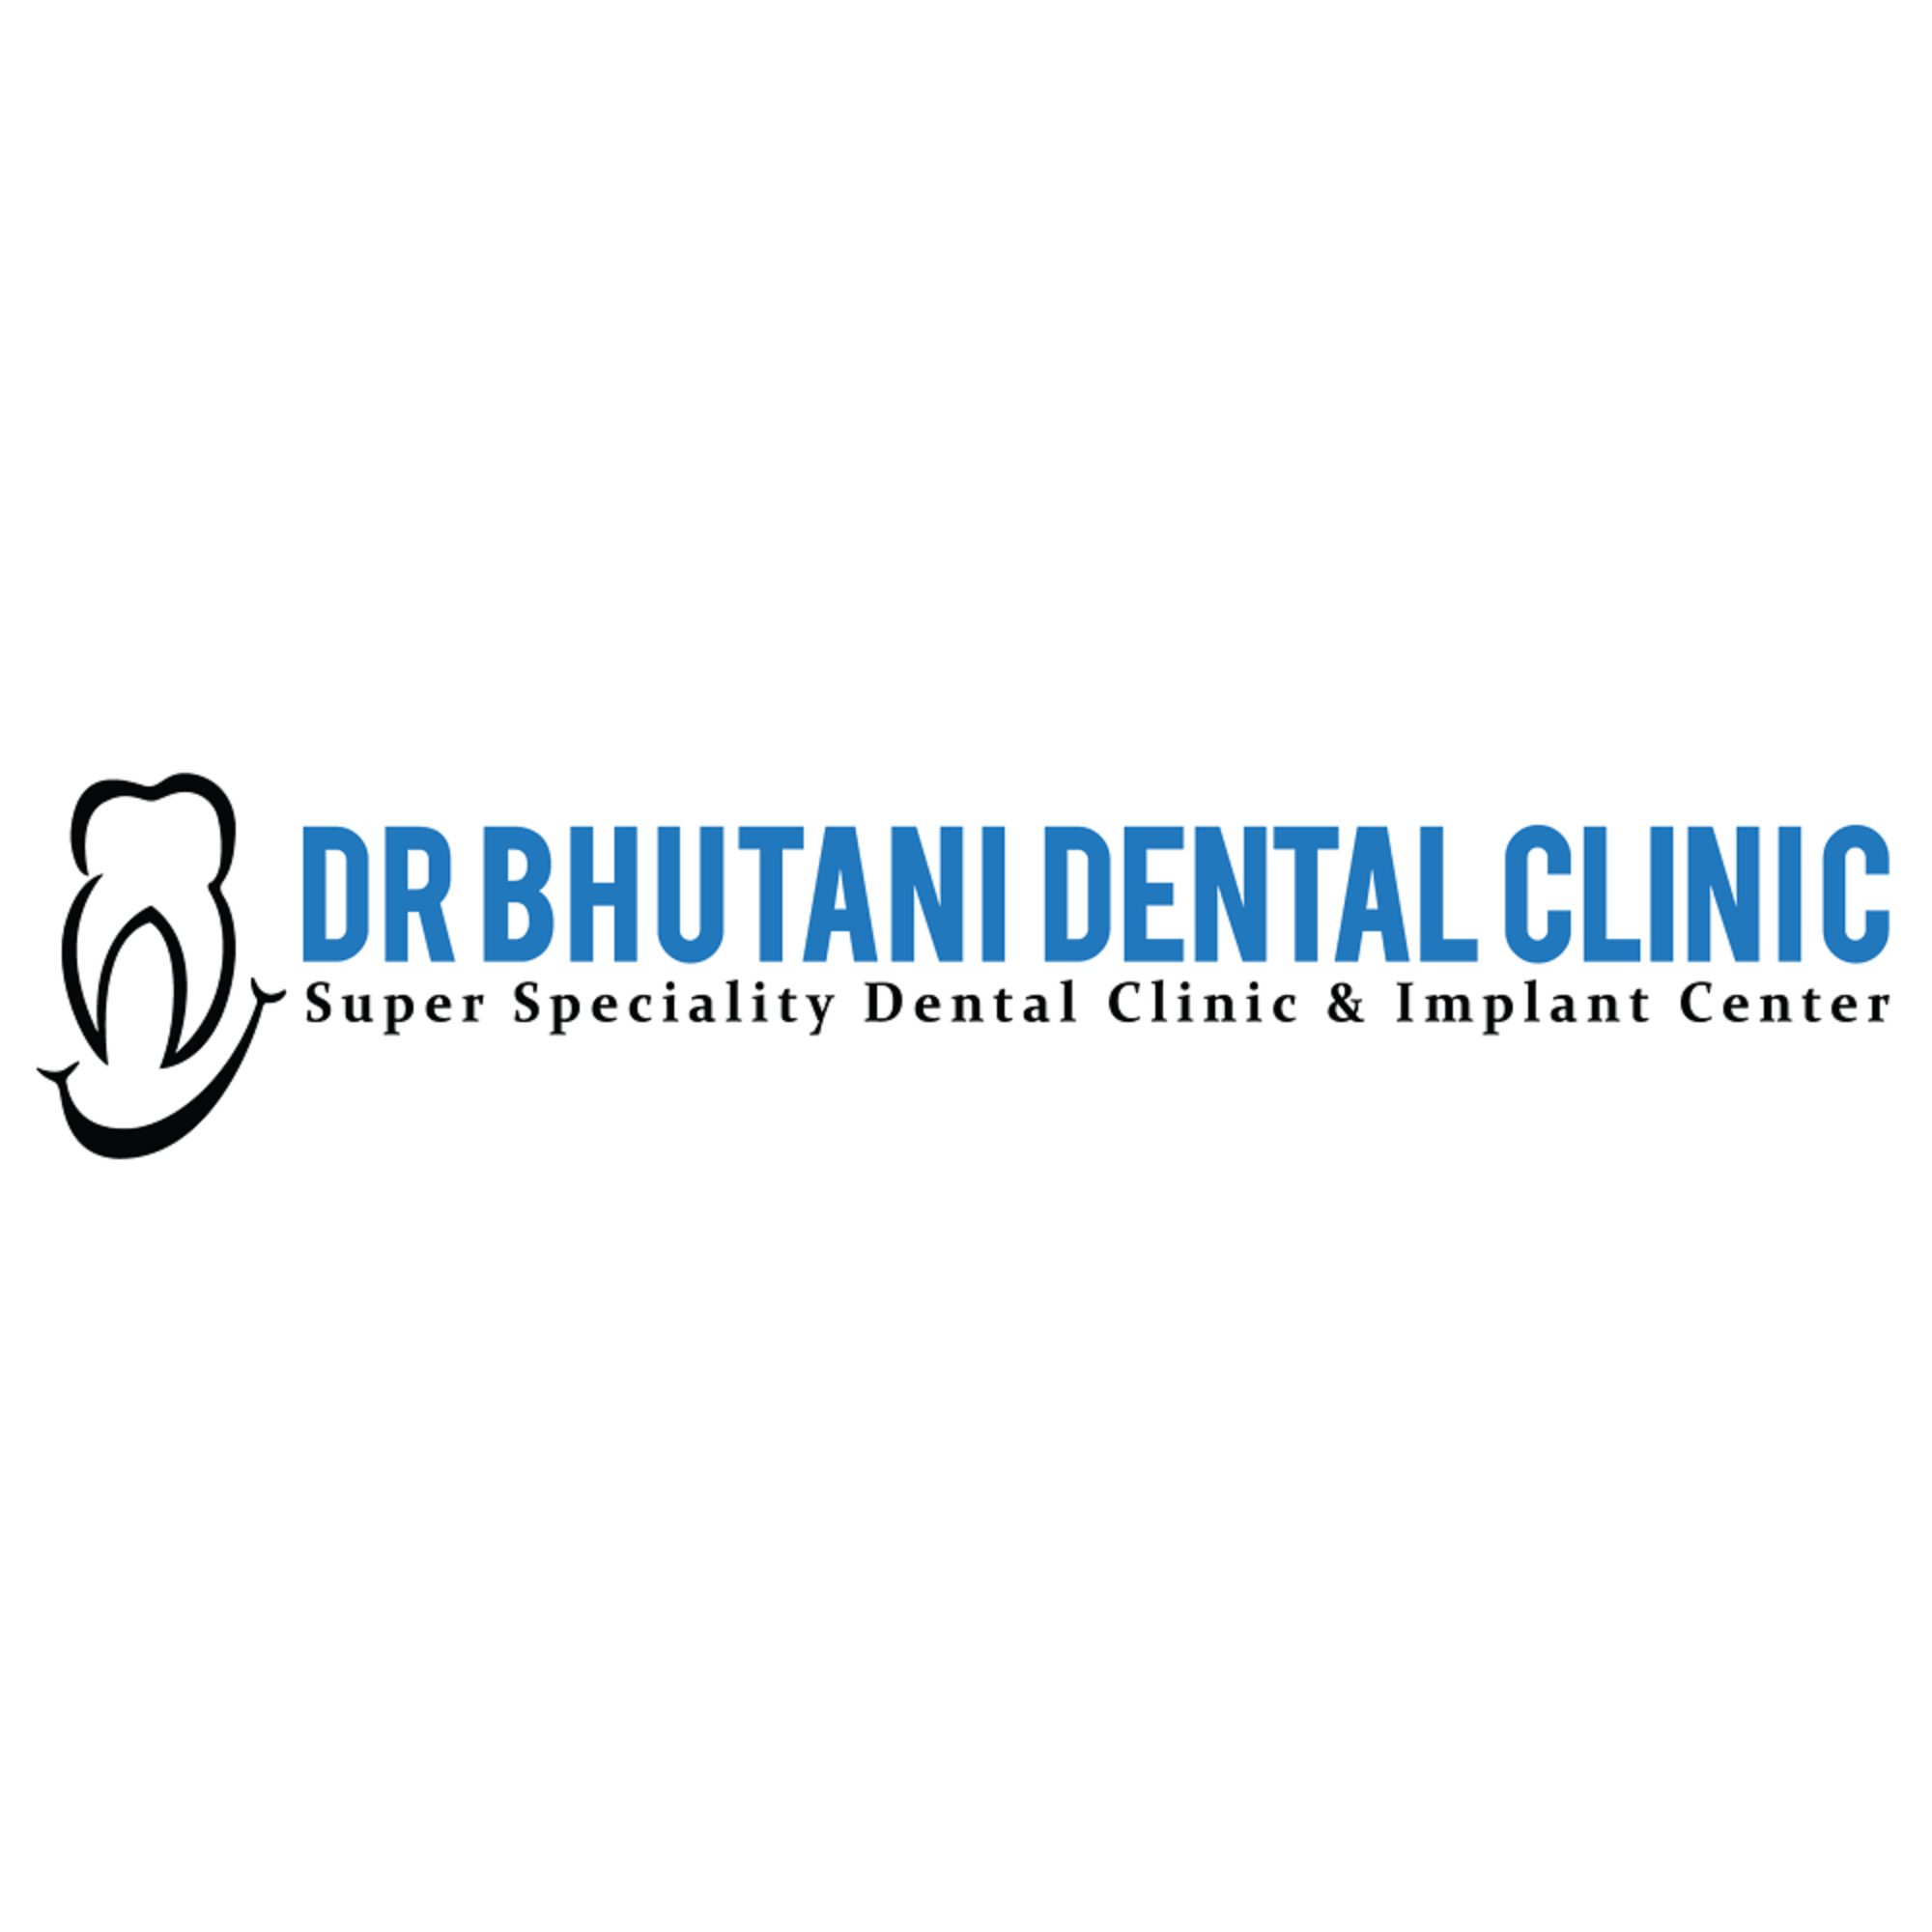 DR BHUTANI DENTAL CLINIC | BEST DENTIST IN DELHI Logo